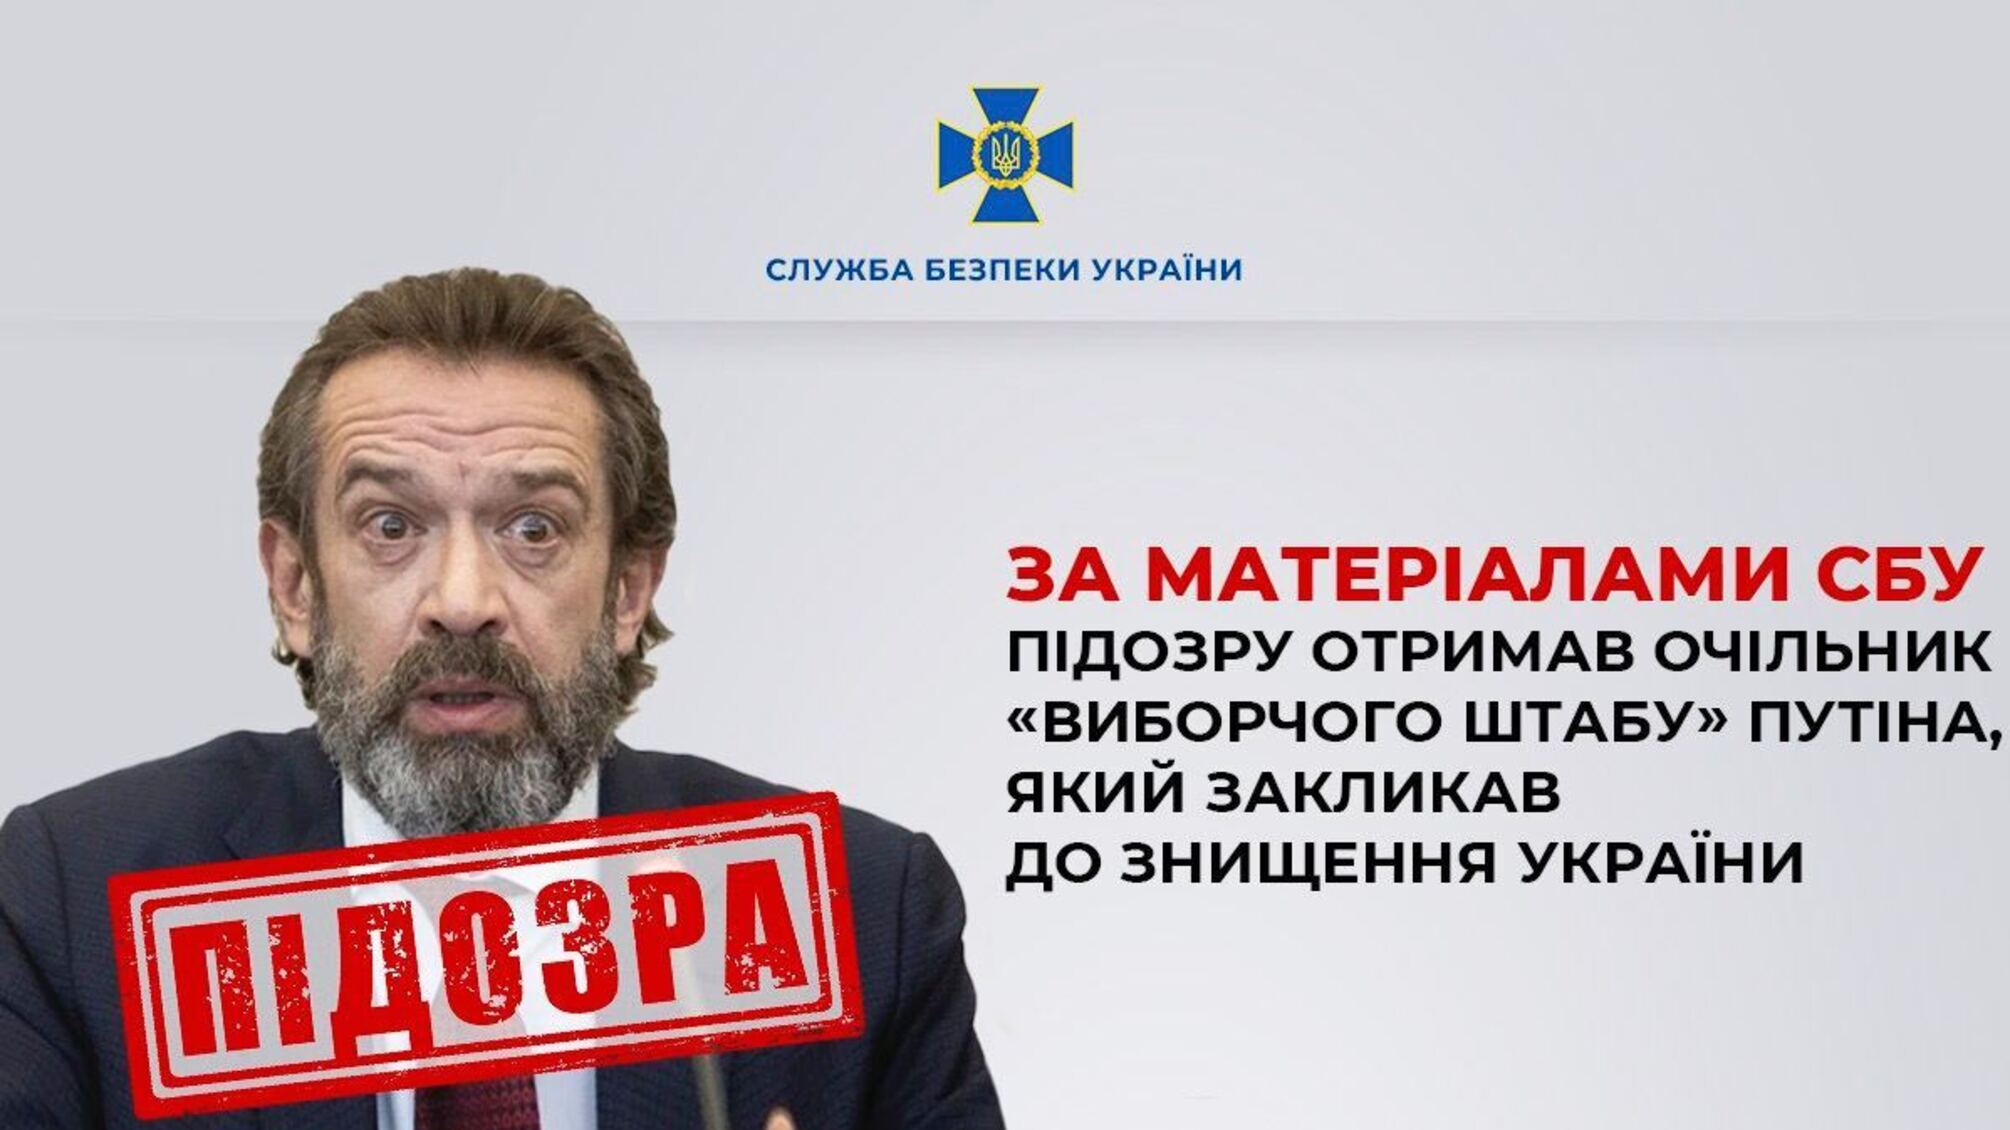 За матеріалами СБУ підозру отримав очільник 'виборчого штабу' путіна, який закликав до знищення України